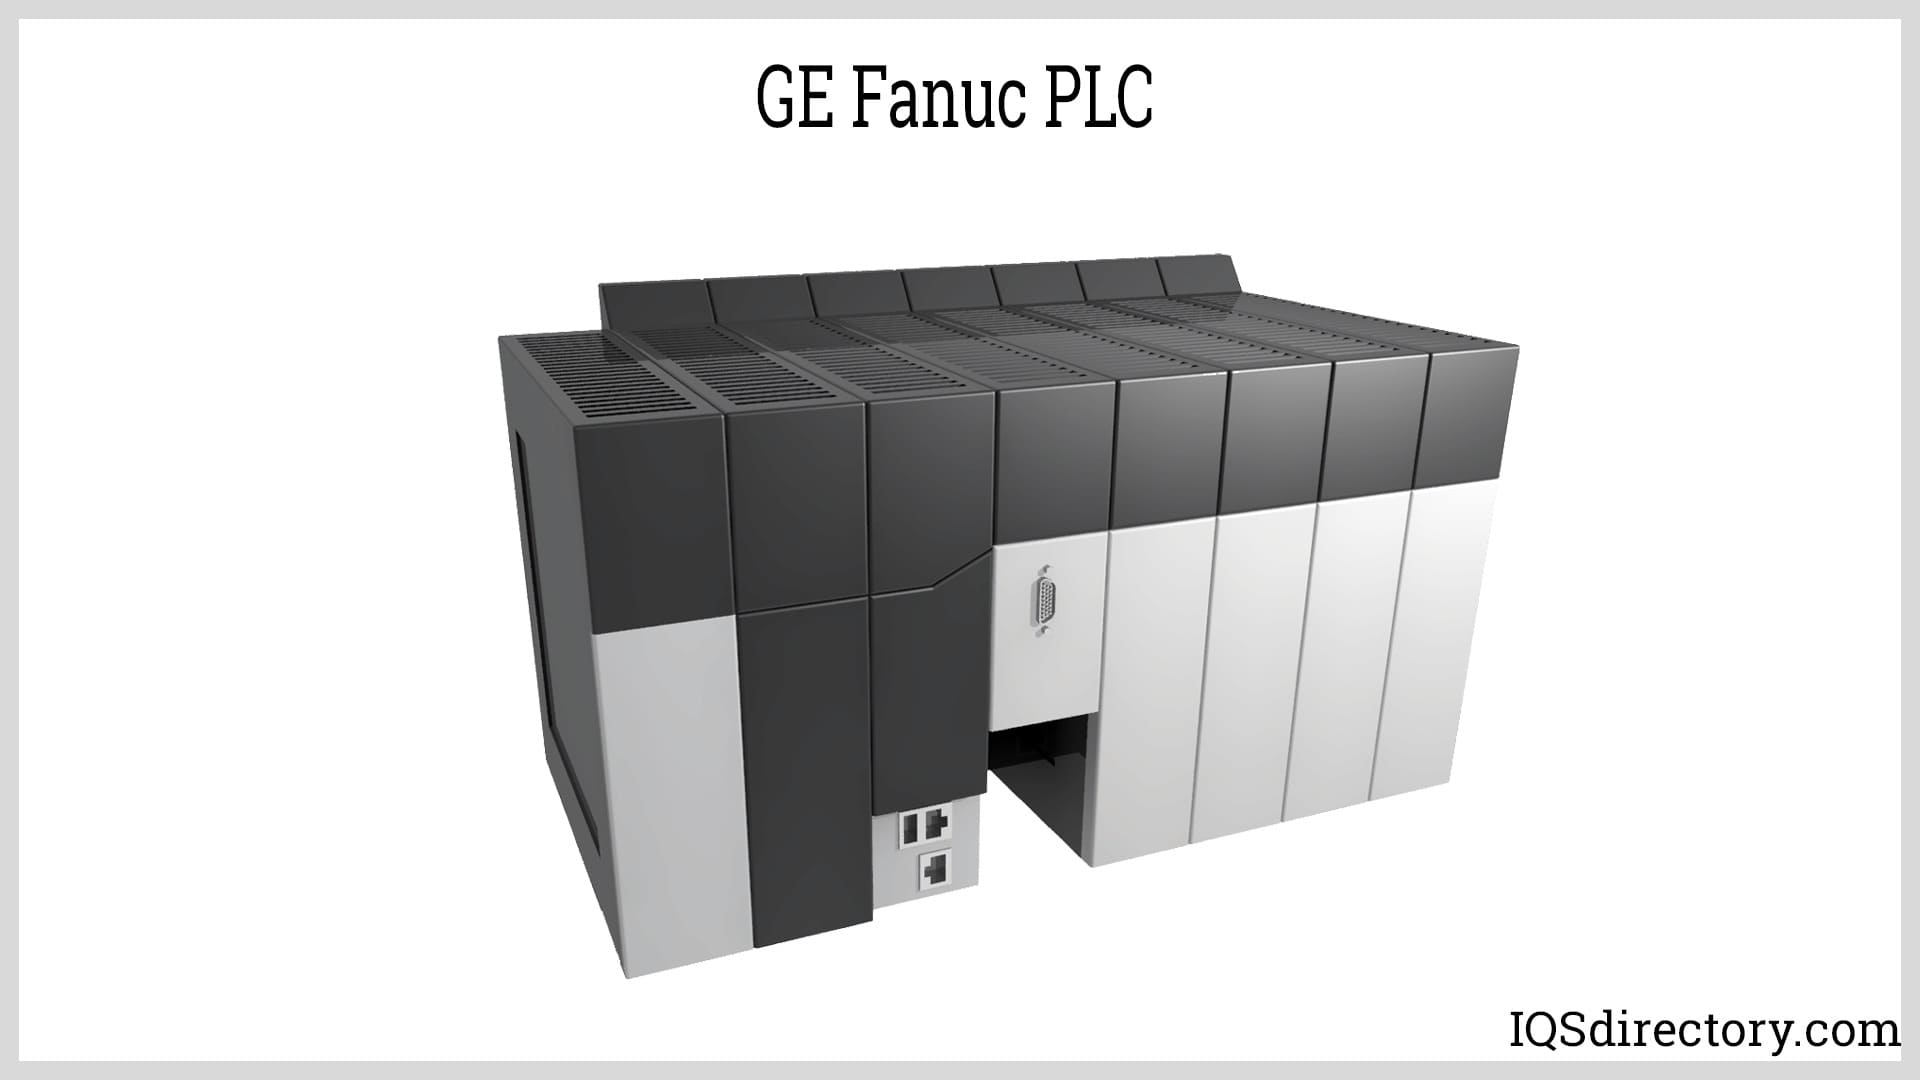 GE Fanuc PLC